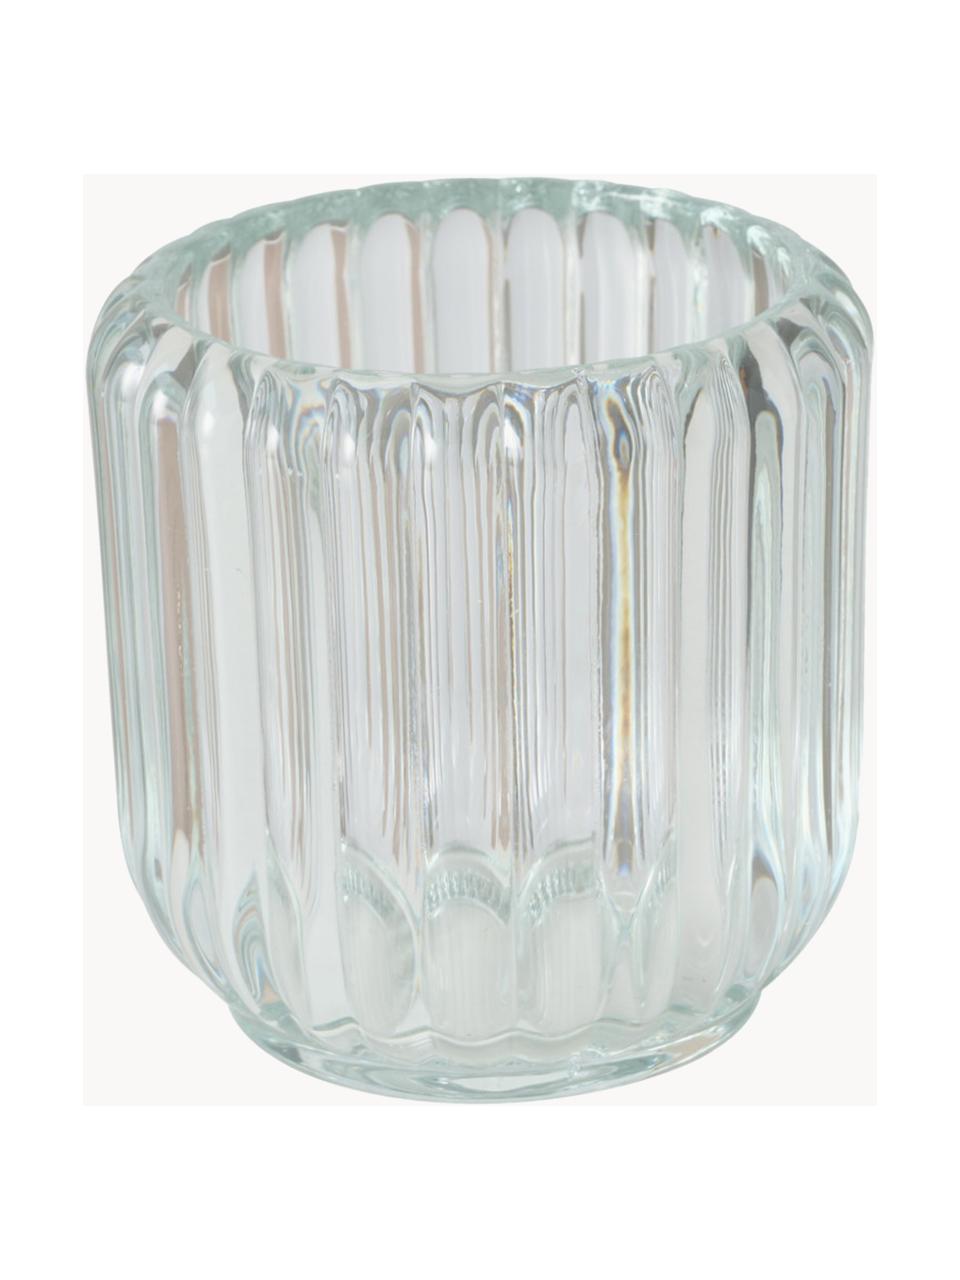 Glazen windlichten Reguna met groefreliëf, set van 3, Glas, Transparant, Ø 9 x H 8 cm